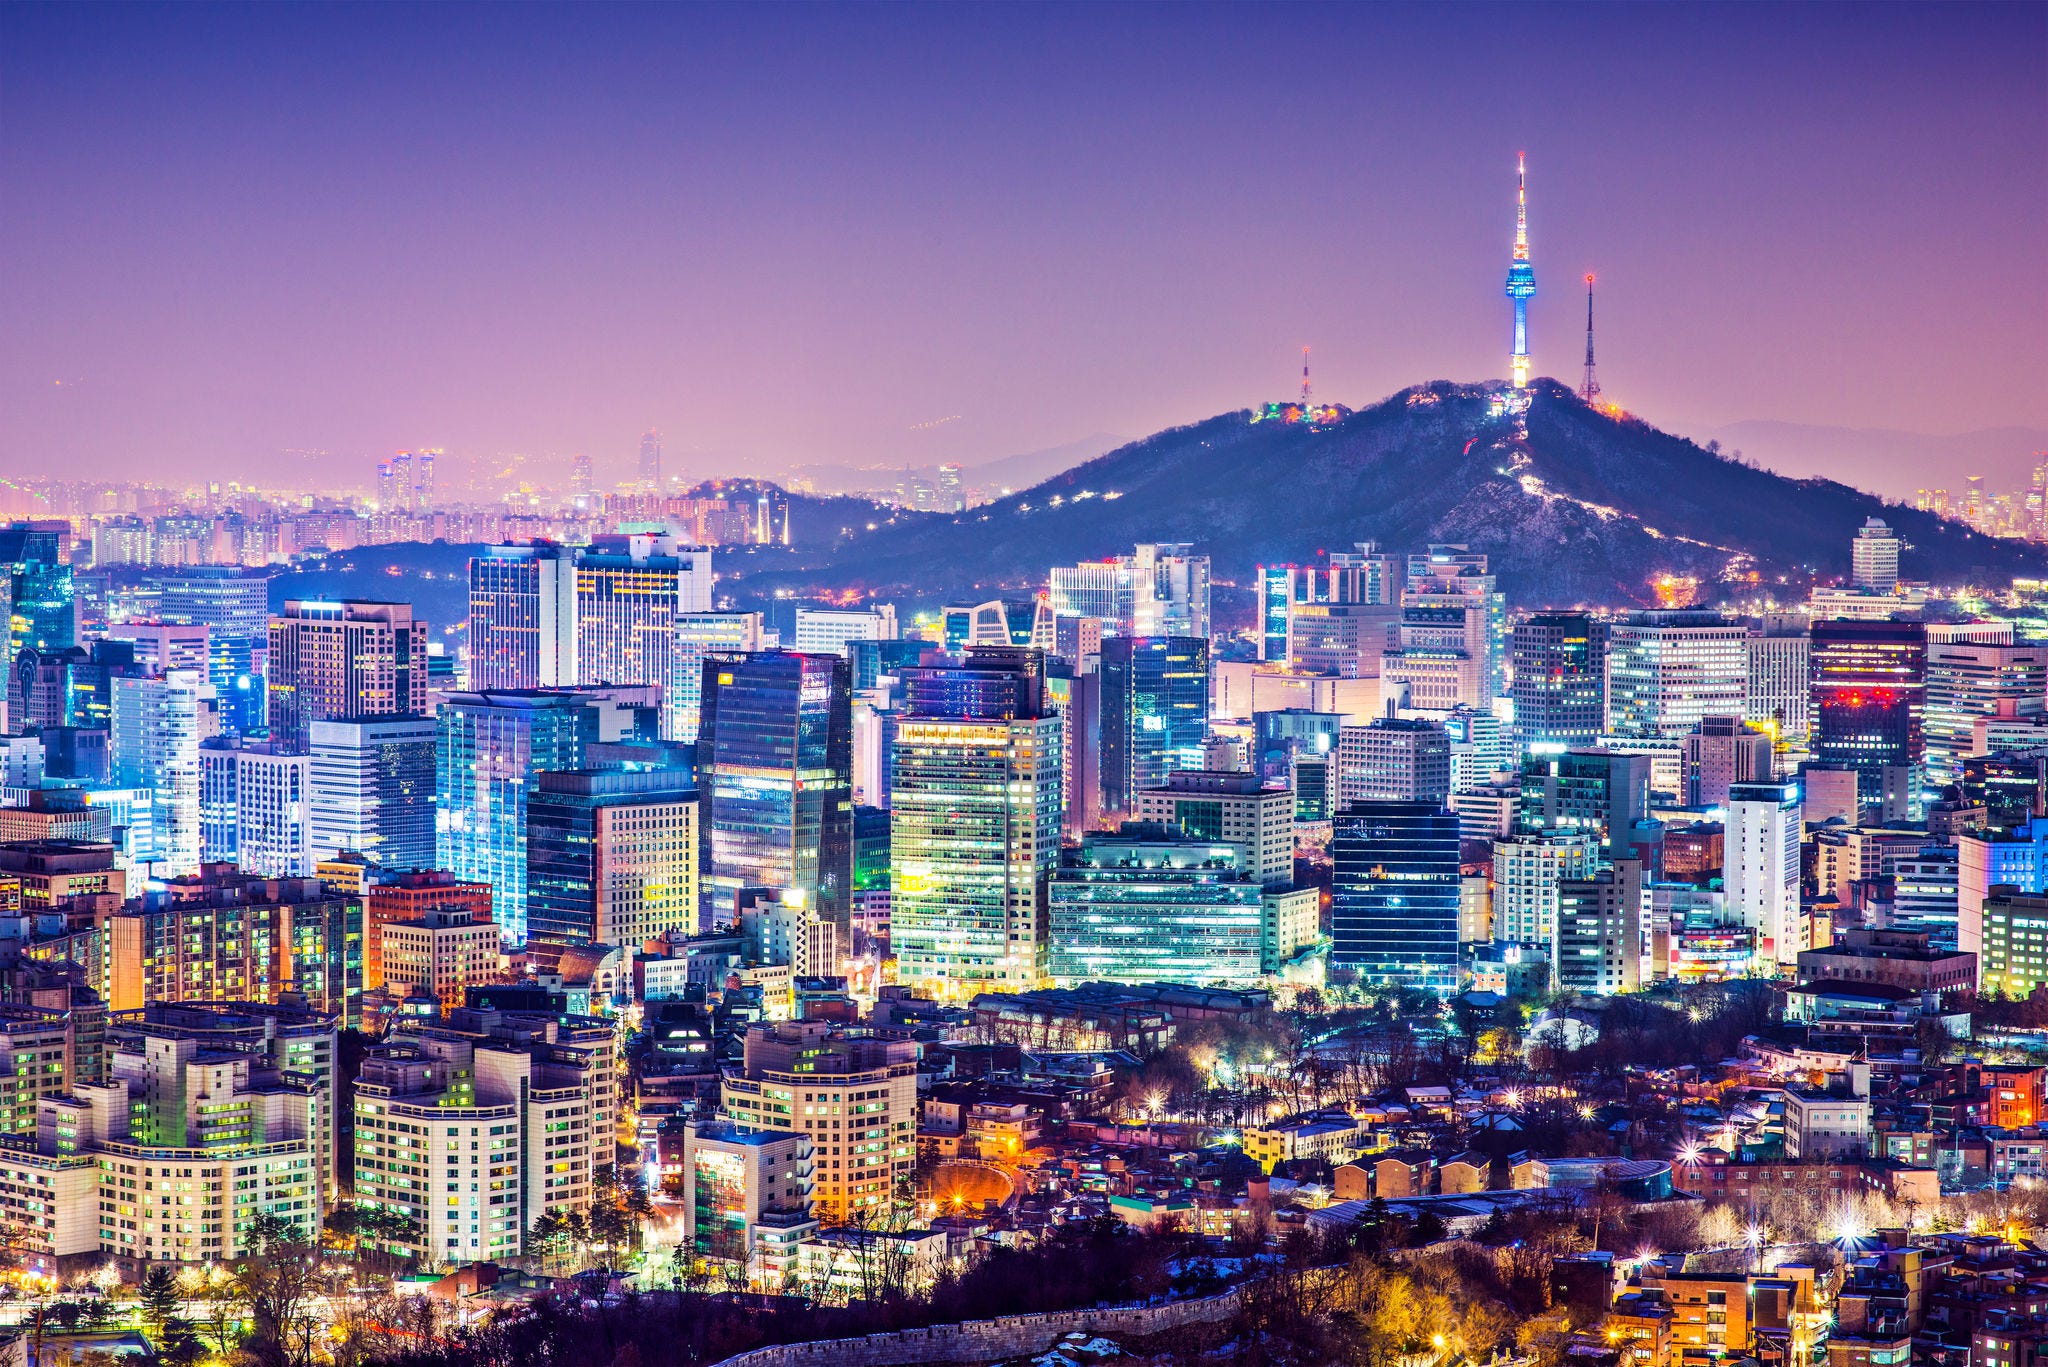 Seoul, South Korea city skyline nighttime skyline.